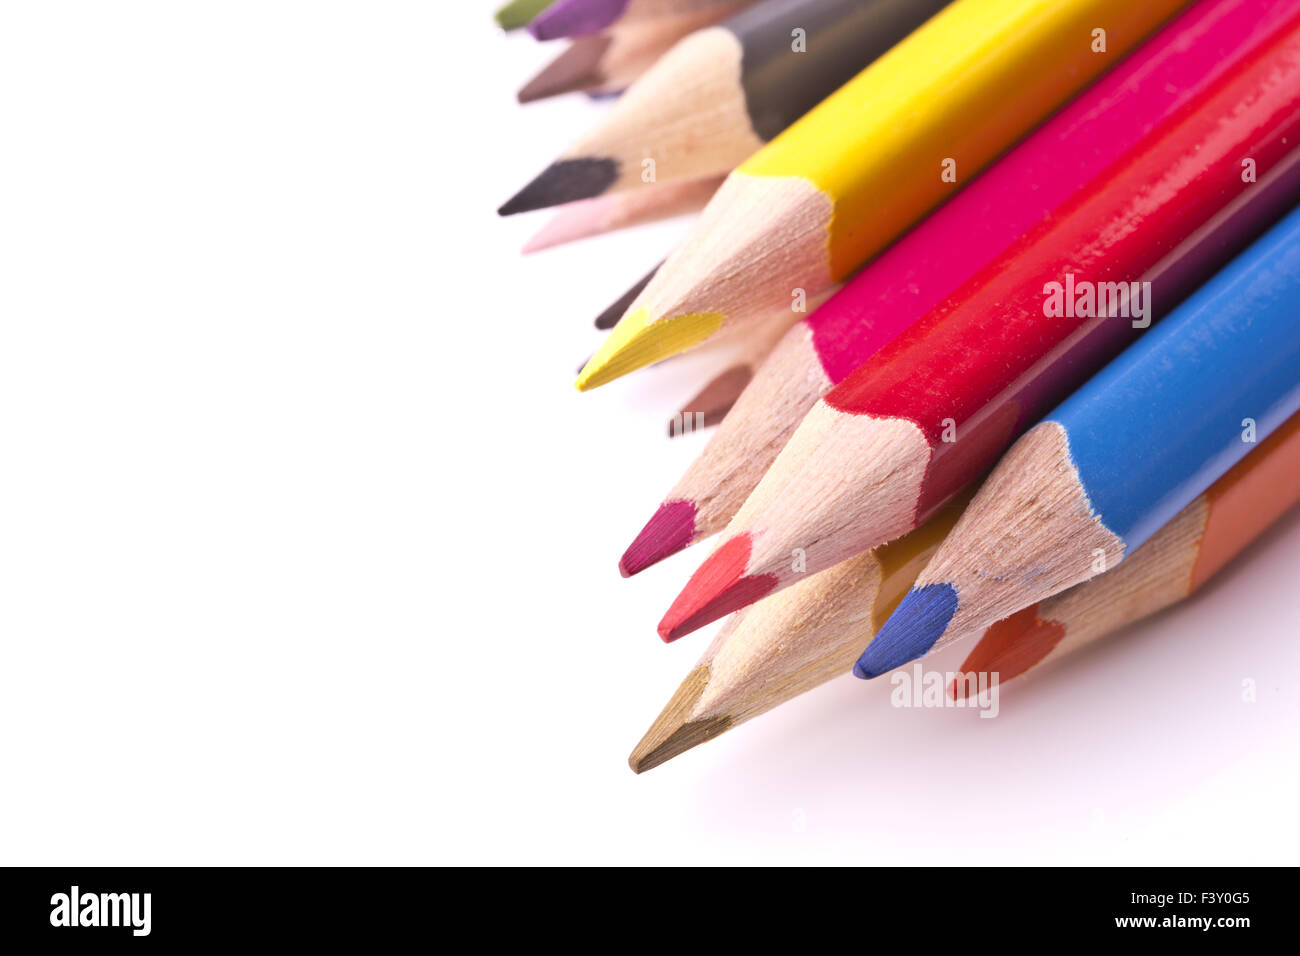 pencils Stock Photo